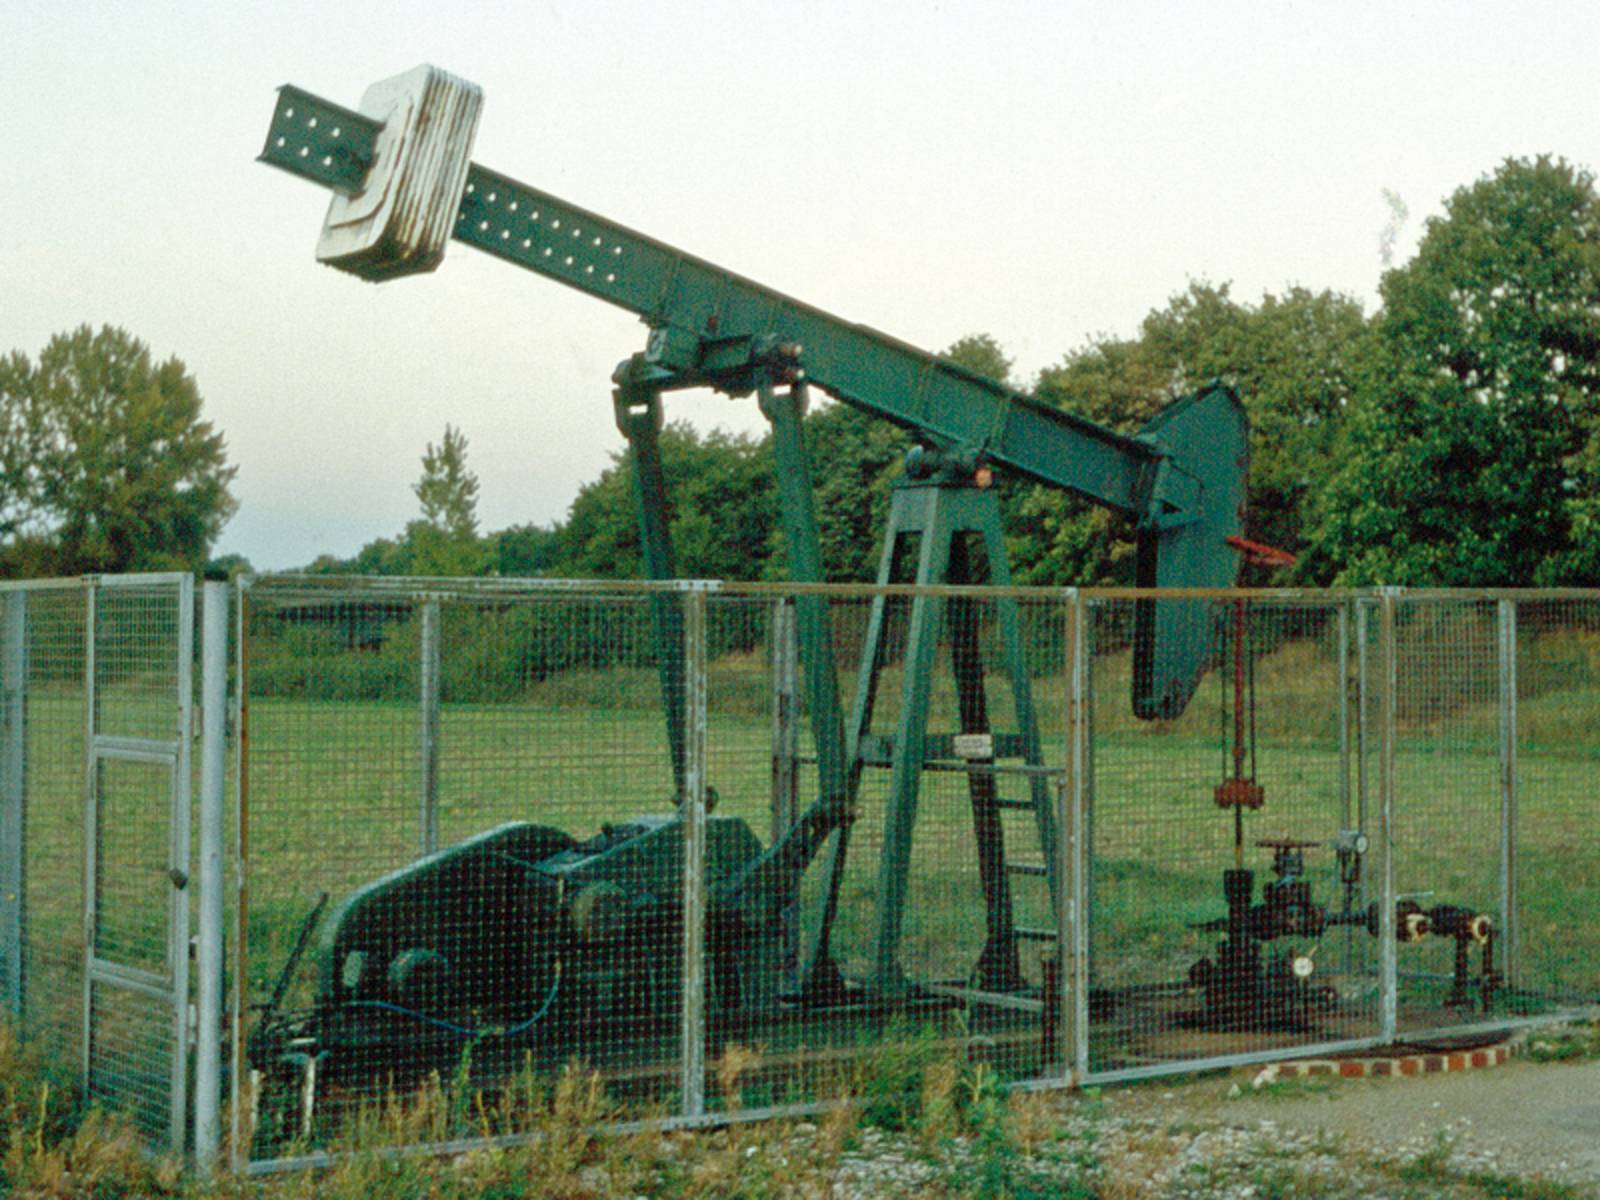 Ölpumpe in einem abgesperrten Bereich auf einer Wiese